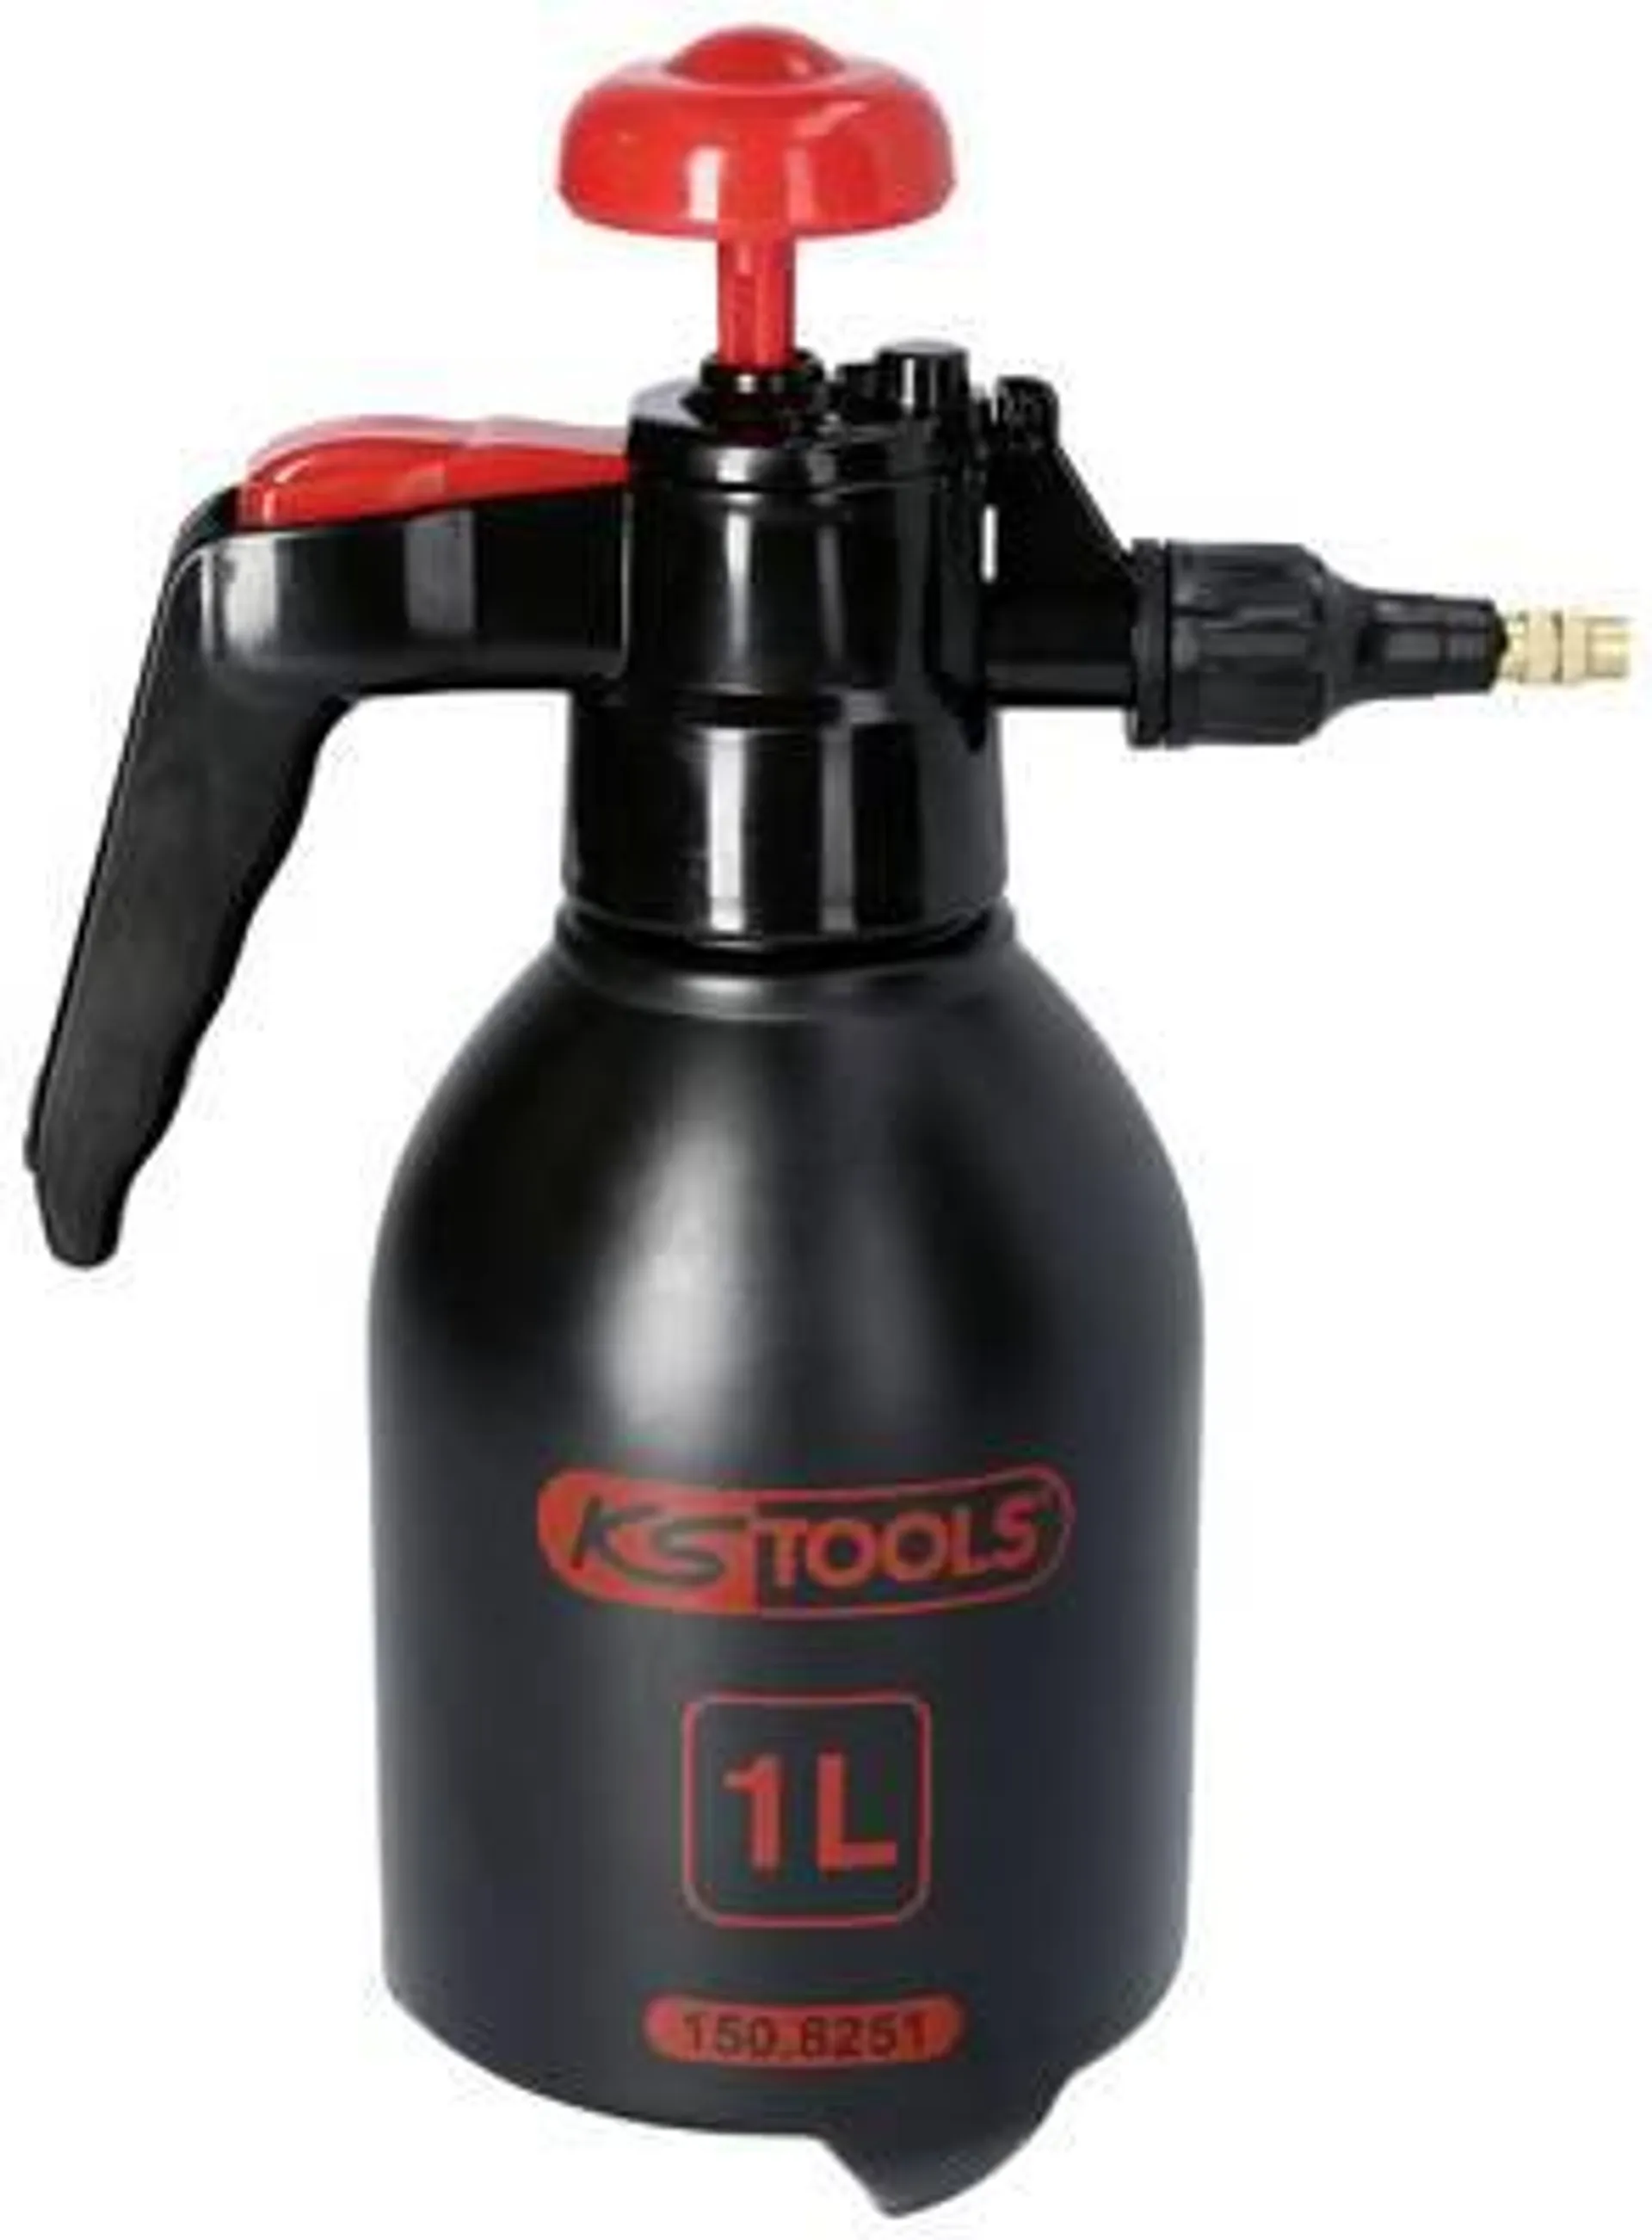 KS Tools 150.8251 Industrial sprayer 1 l